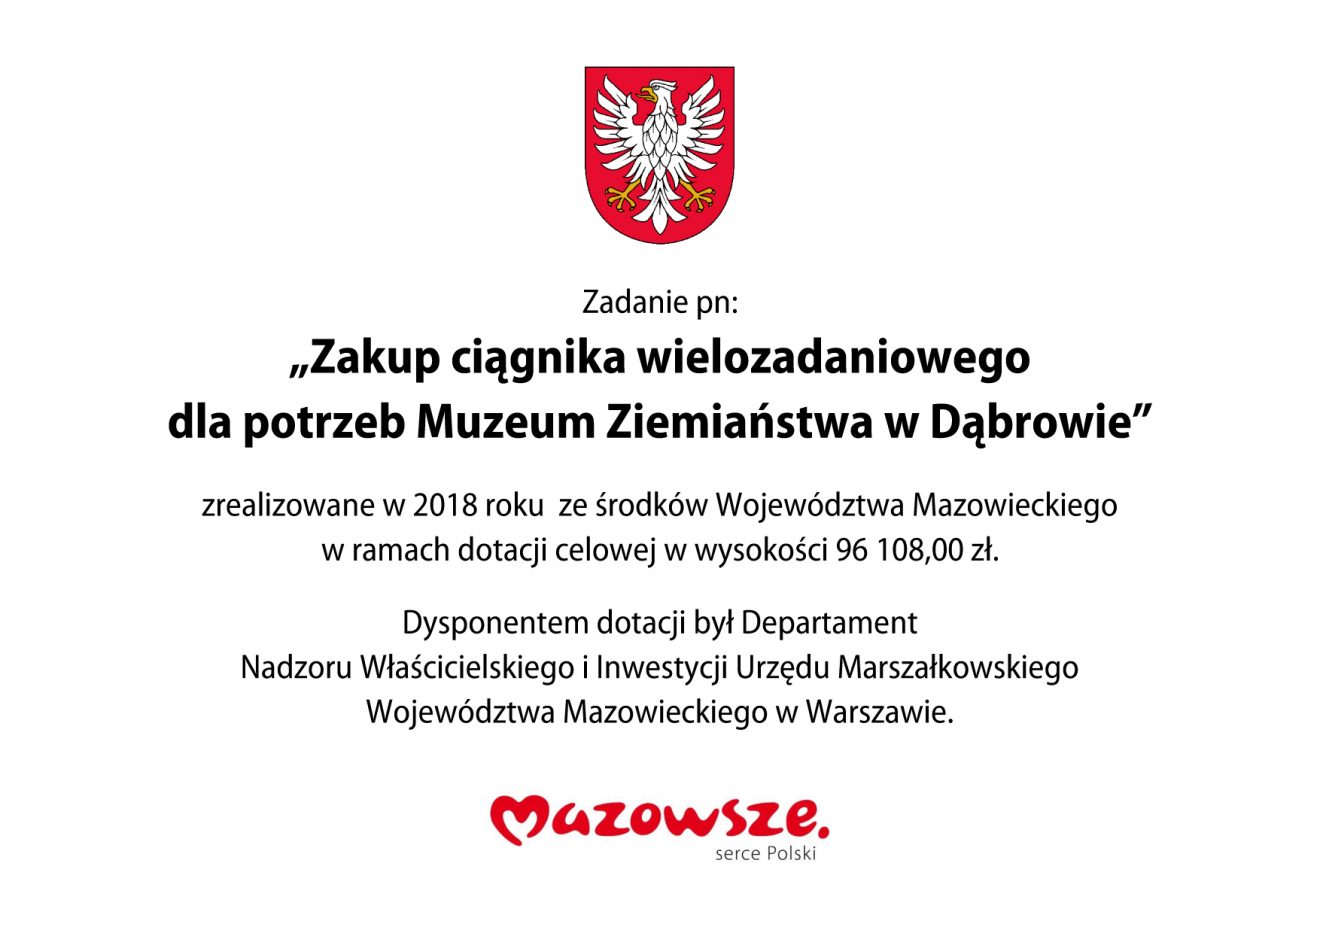 Tabliczka informacja o zrealizowaniu zadania z logotypem Mazowsza